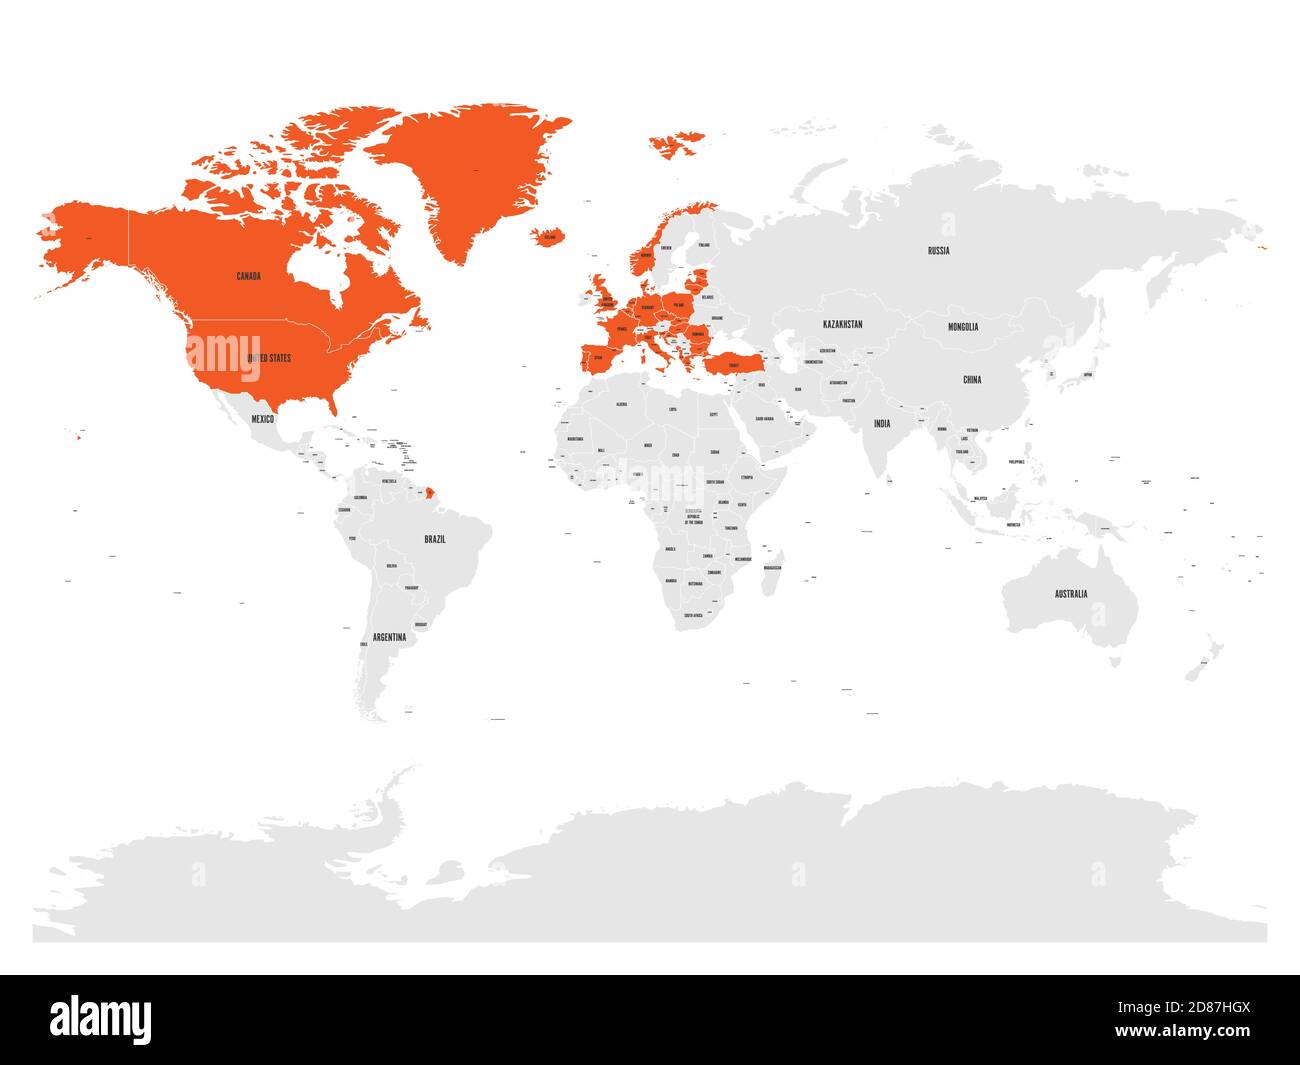 Organizzazione del Trattato Nord Atlantico, NATO, paesi membri evidenziati da arancione nella mappa politica mondiale. 29 stati membri dal giugno 2017. Illustrazione Vettoriale